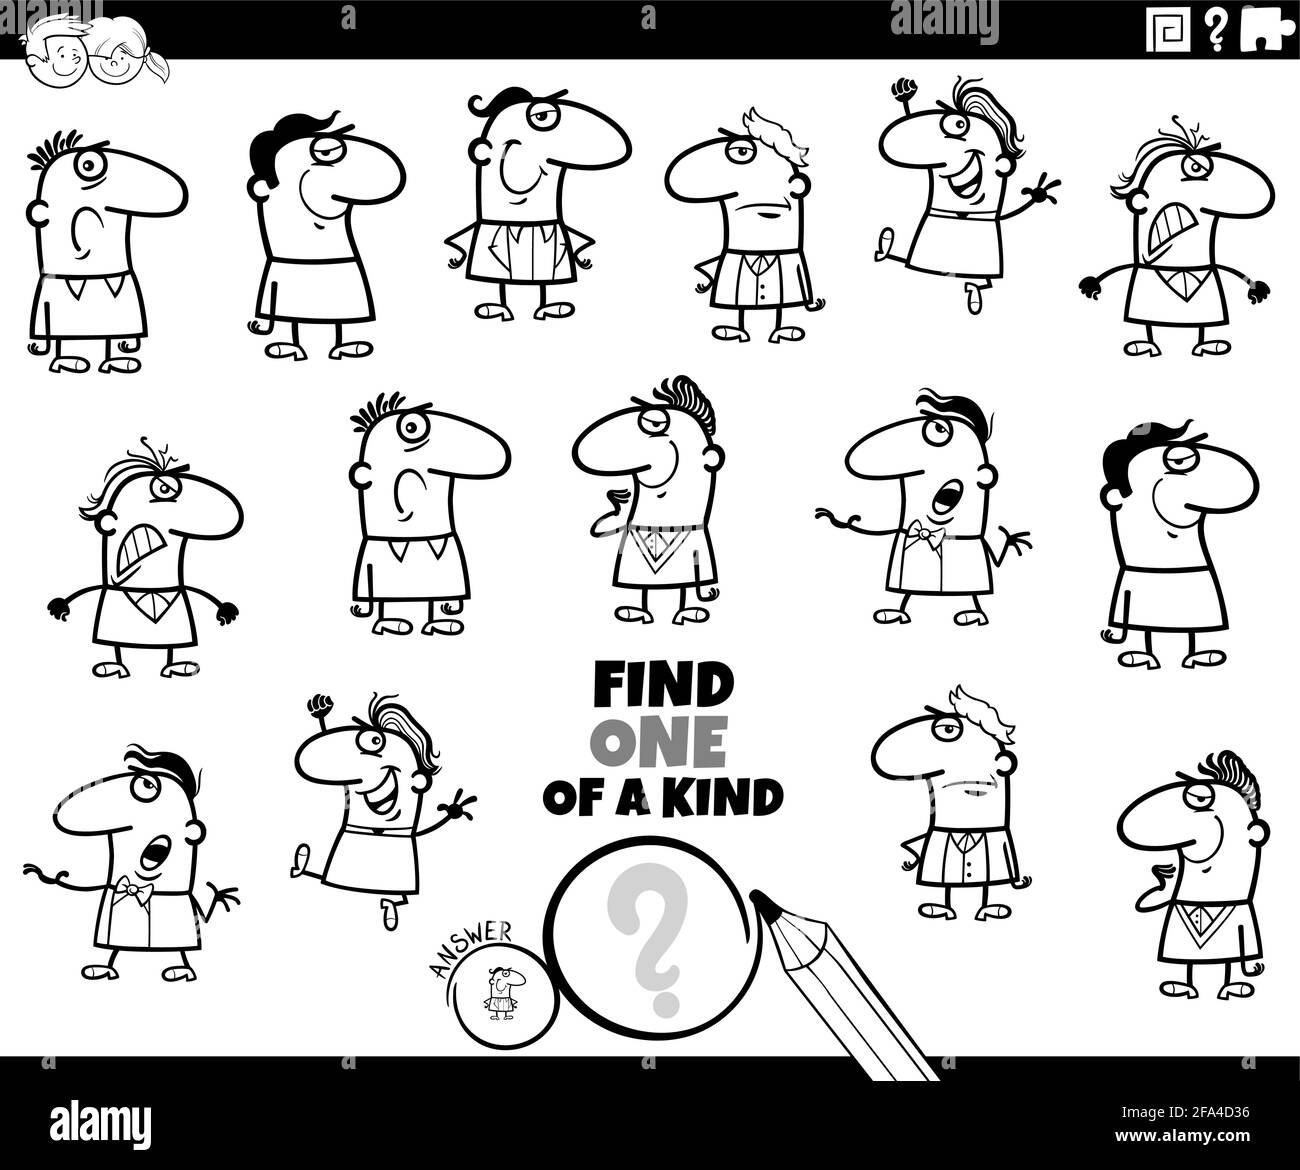 Ilustración de dibujos animados en blanco y negro de encontrar uno de un una tarea educativa de cuadro amable para niños con personajes de hombres divertidos página de libro para colorear Ilustración del Vector